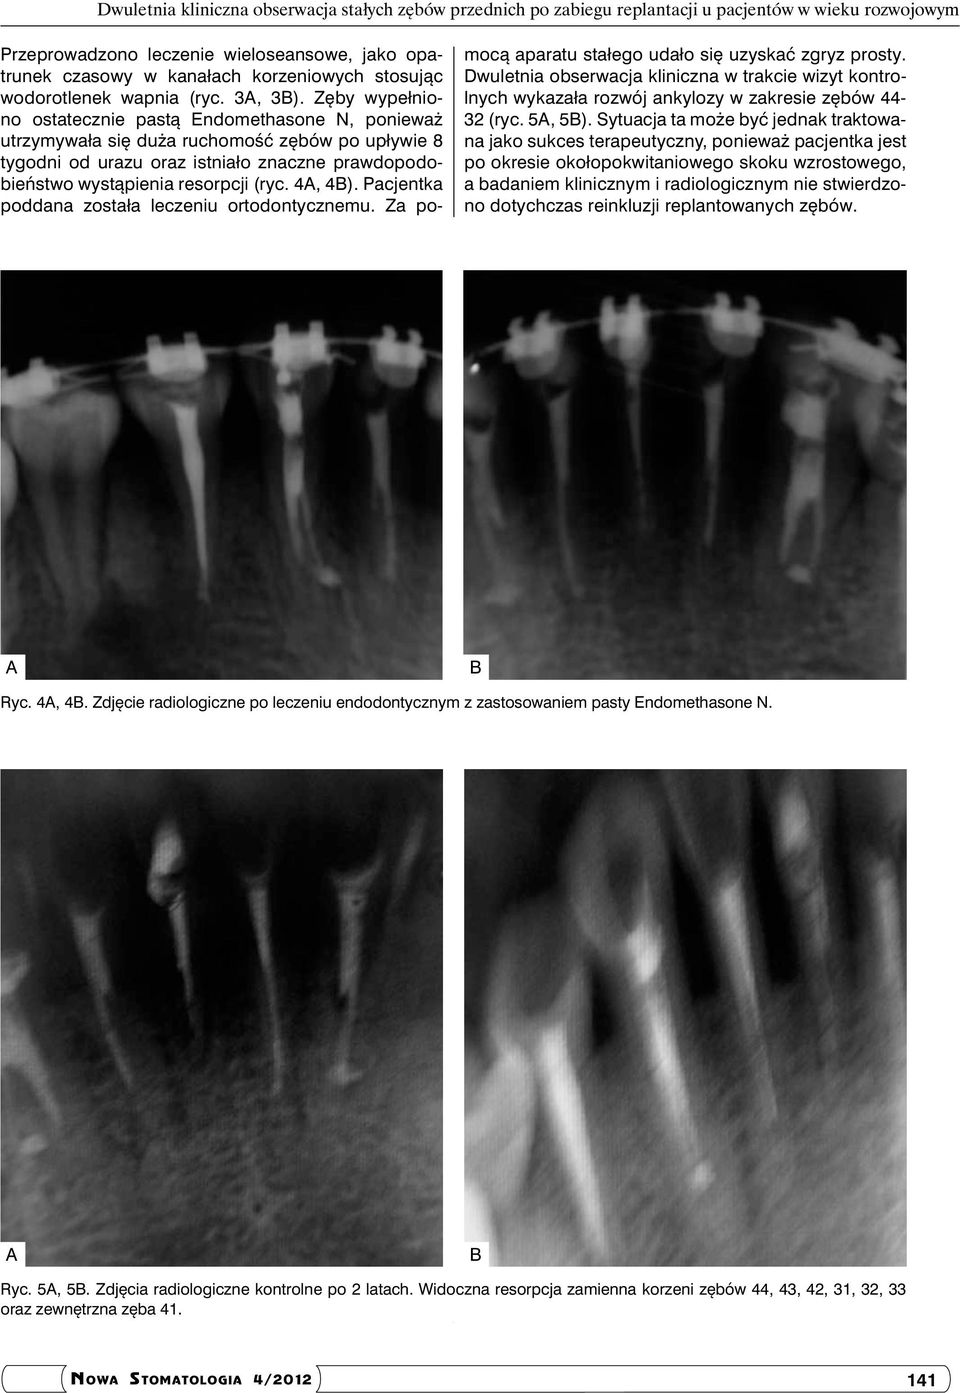 Zęby wypełniono ostatecznie pastą Endomethasone N, ponieważ utrzymywała się duża ruchomość zębów po upływie 8 tygodni od urazu oraz istniało znaczne prawdopodobieństwo wystąpienia resorpcji (ryc.